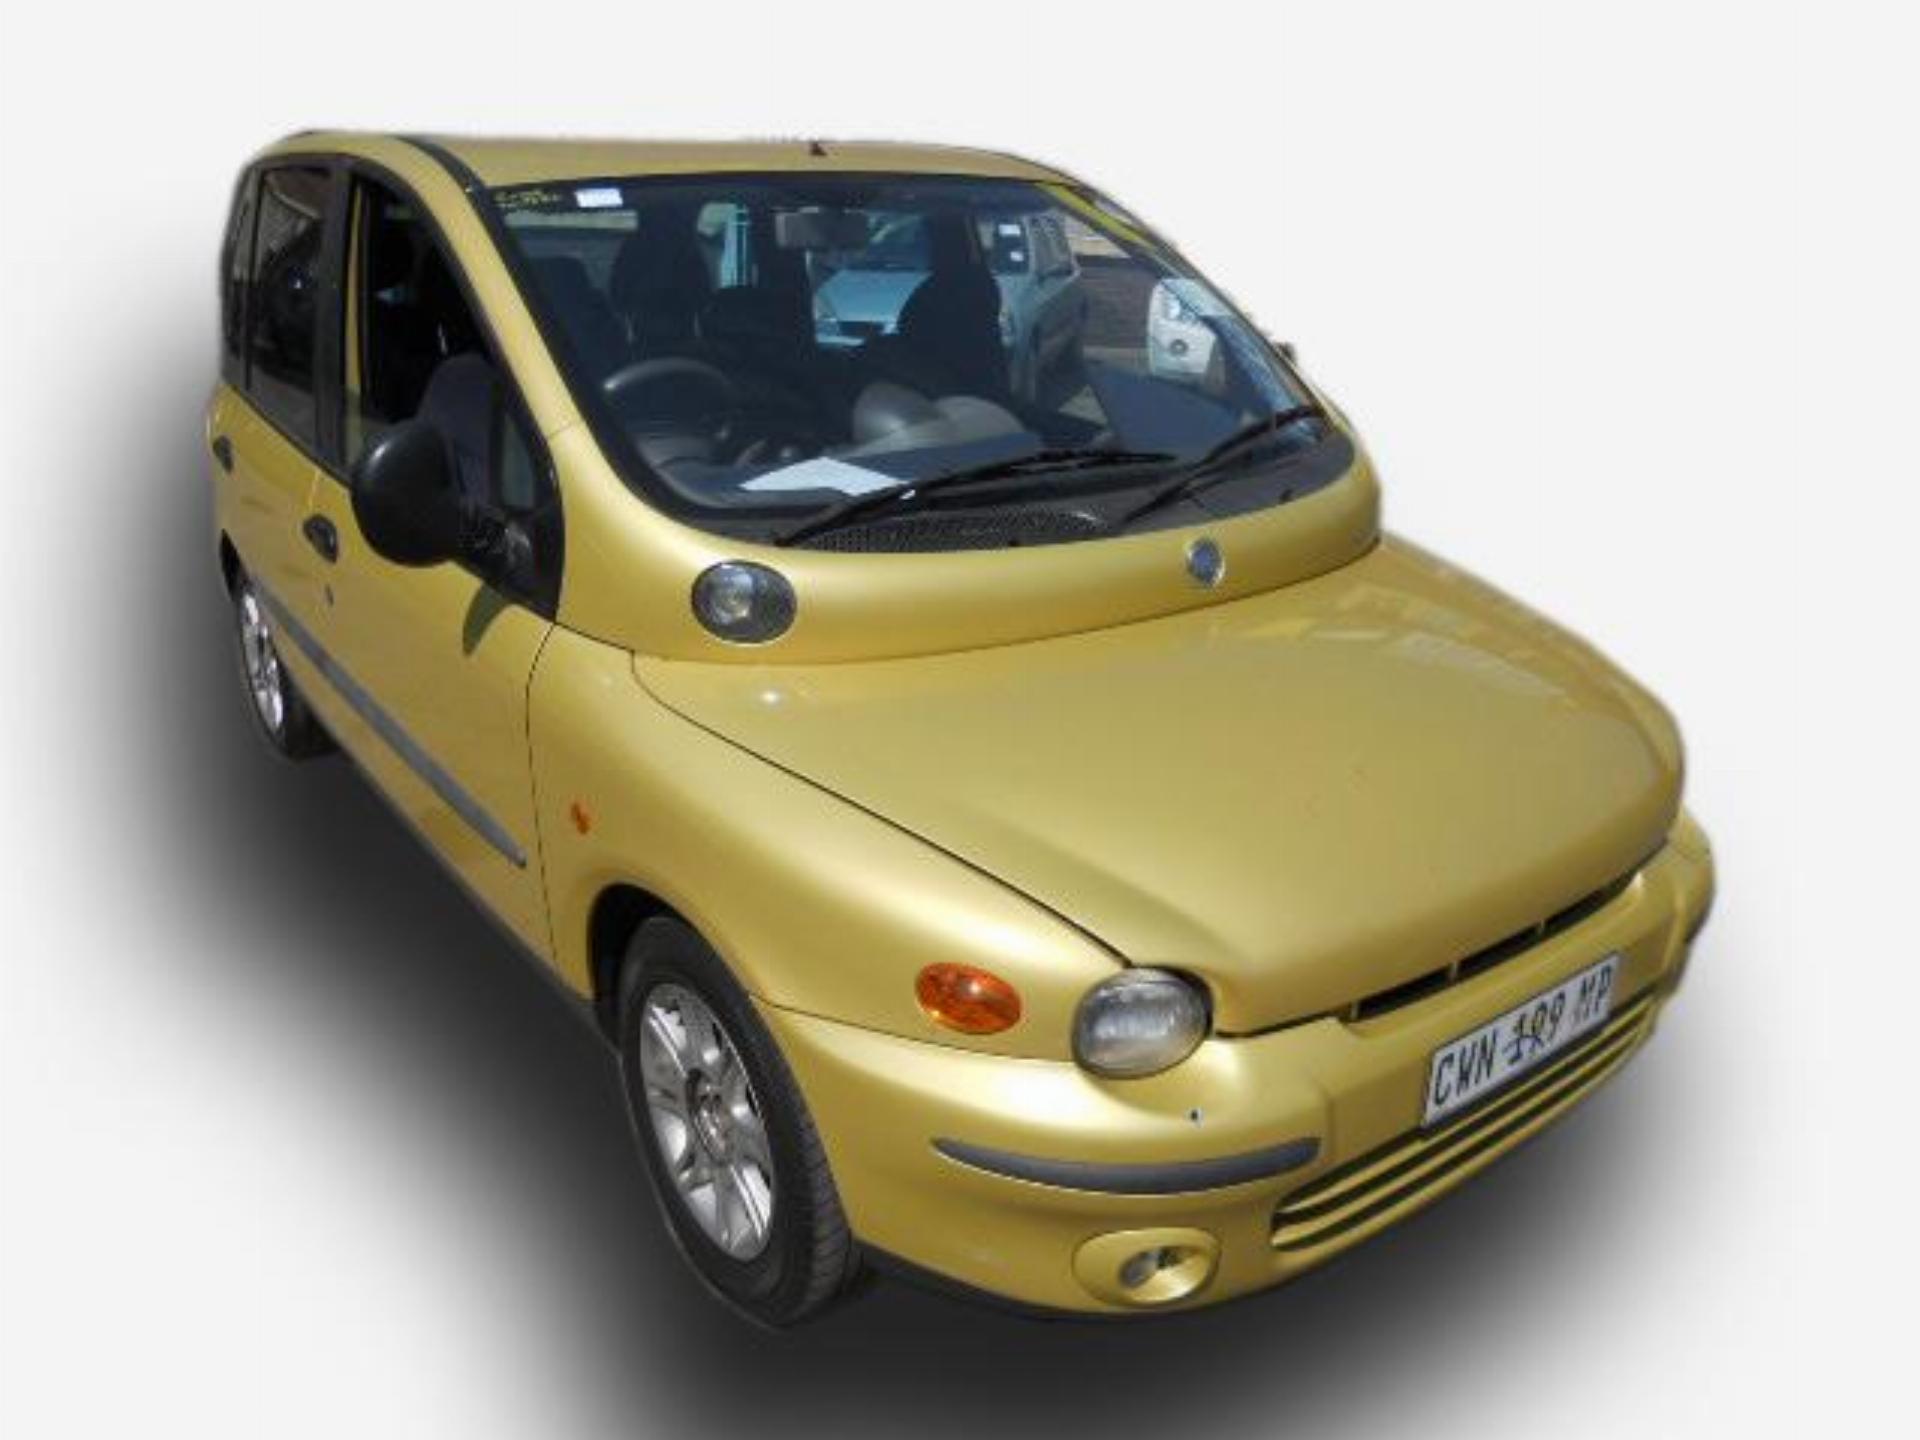 Repossessed Fiat Multipla 1.9 JTD EL 2003 on auction MC23360